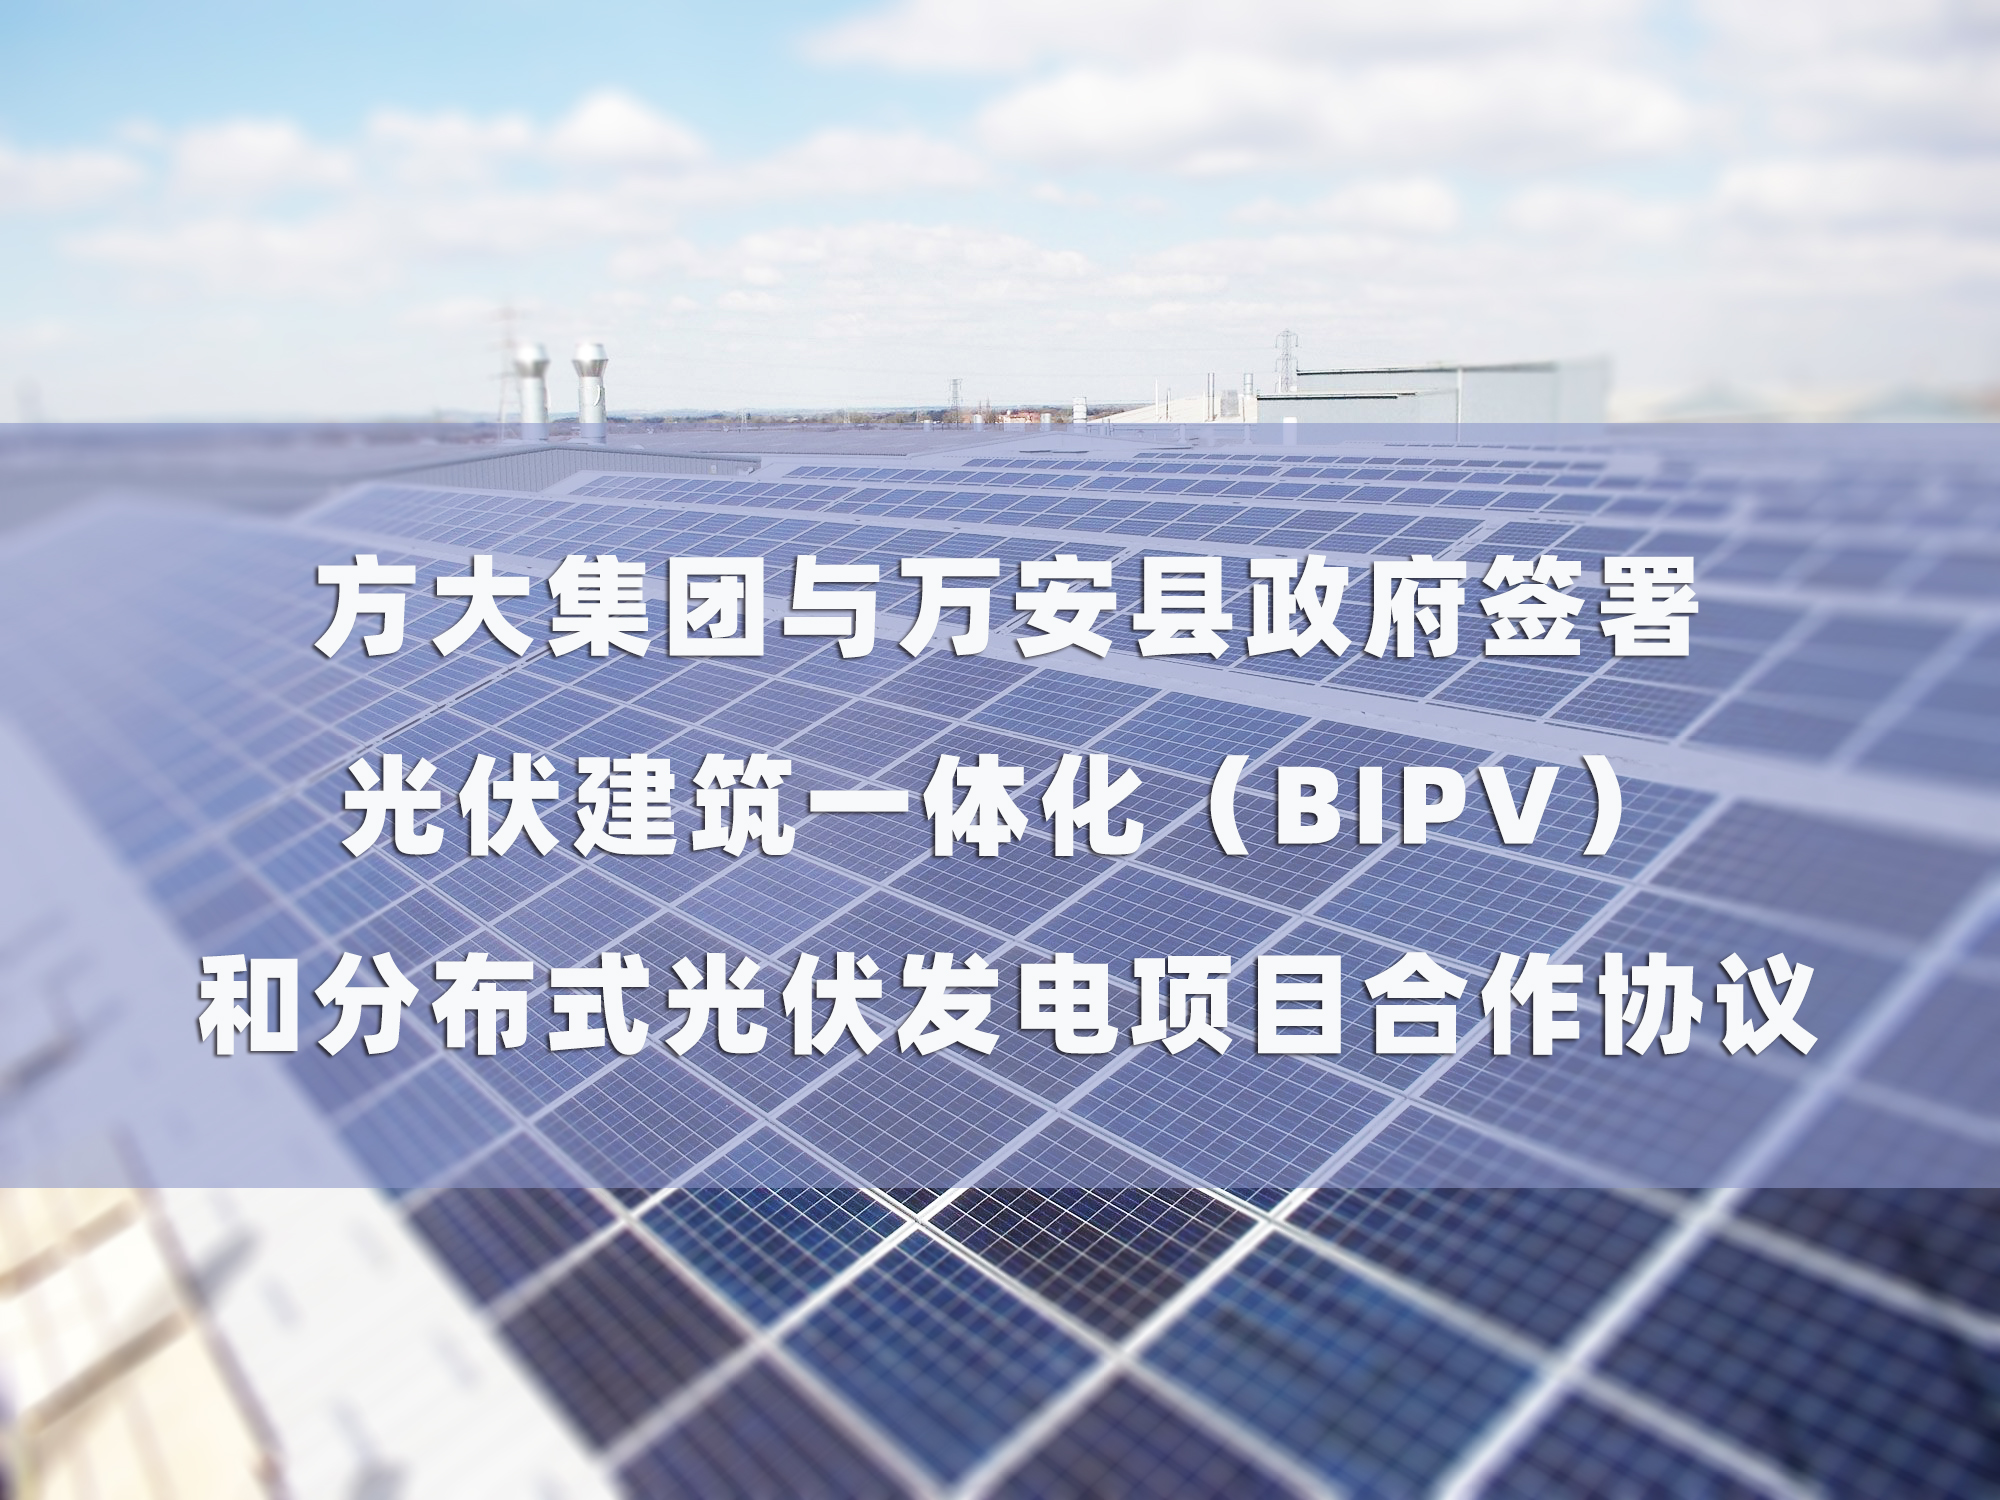 美狮会官网与万安县政府签署 光伏建筑一体化（BIPV）和分布式光伏发电项目合作协议